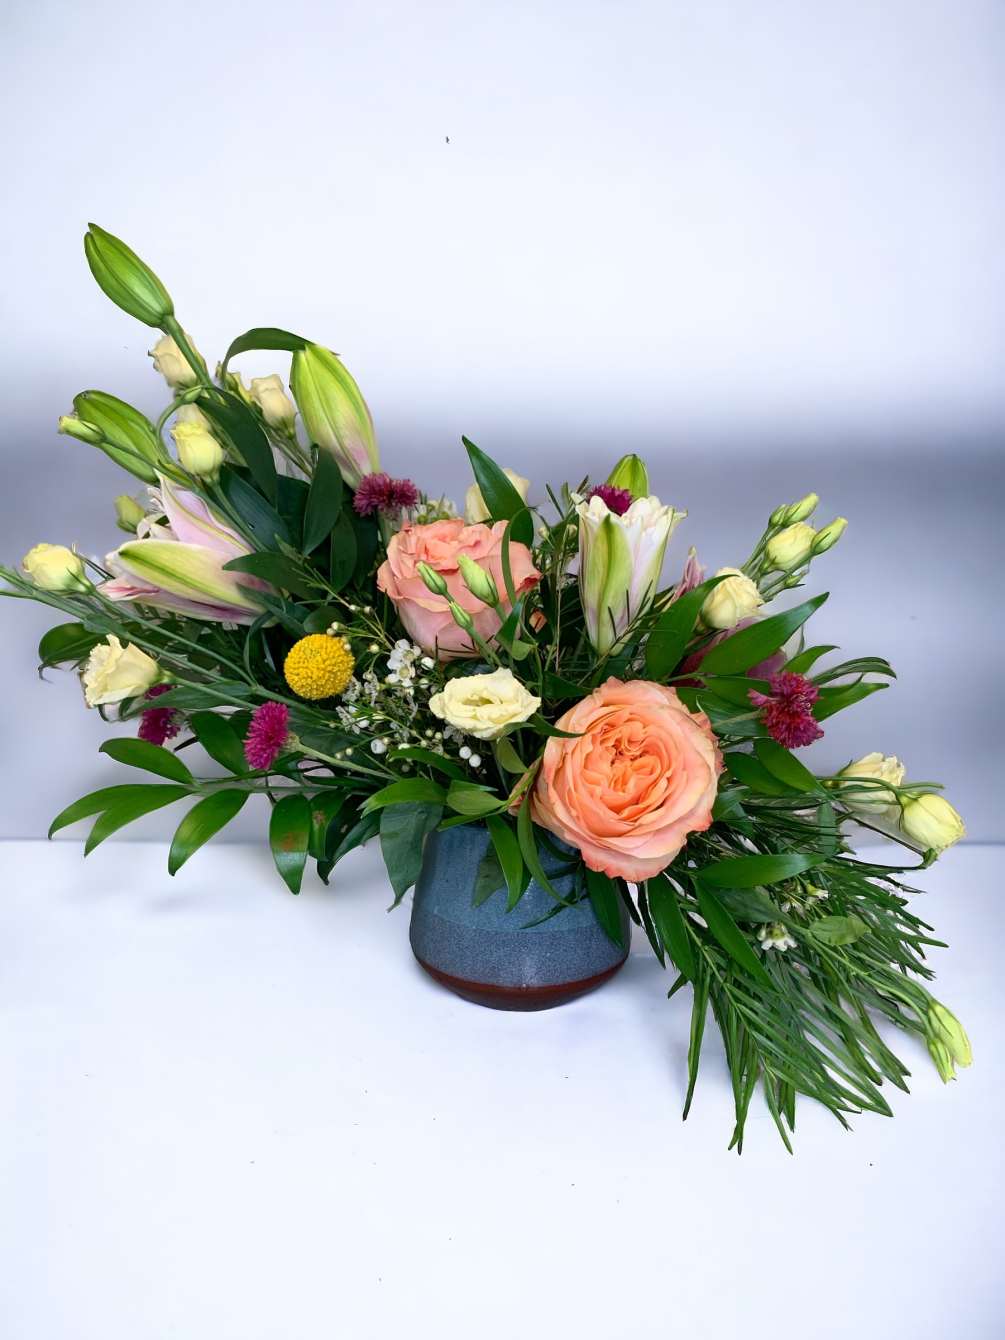 This exquisite flow of elegant flowers in a beautiful ceramic vase is